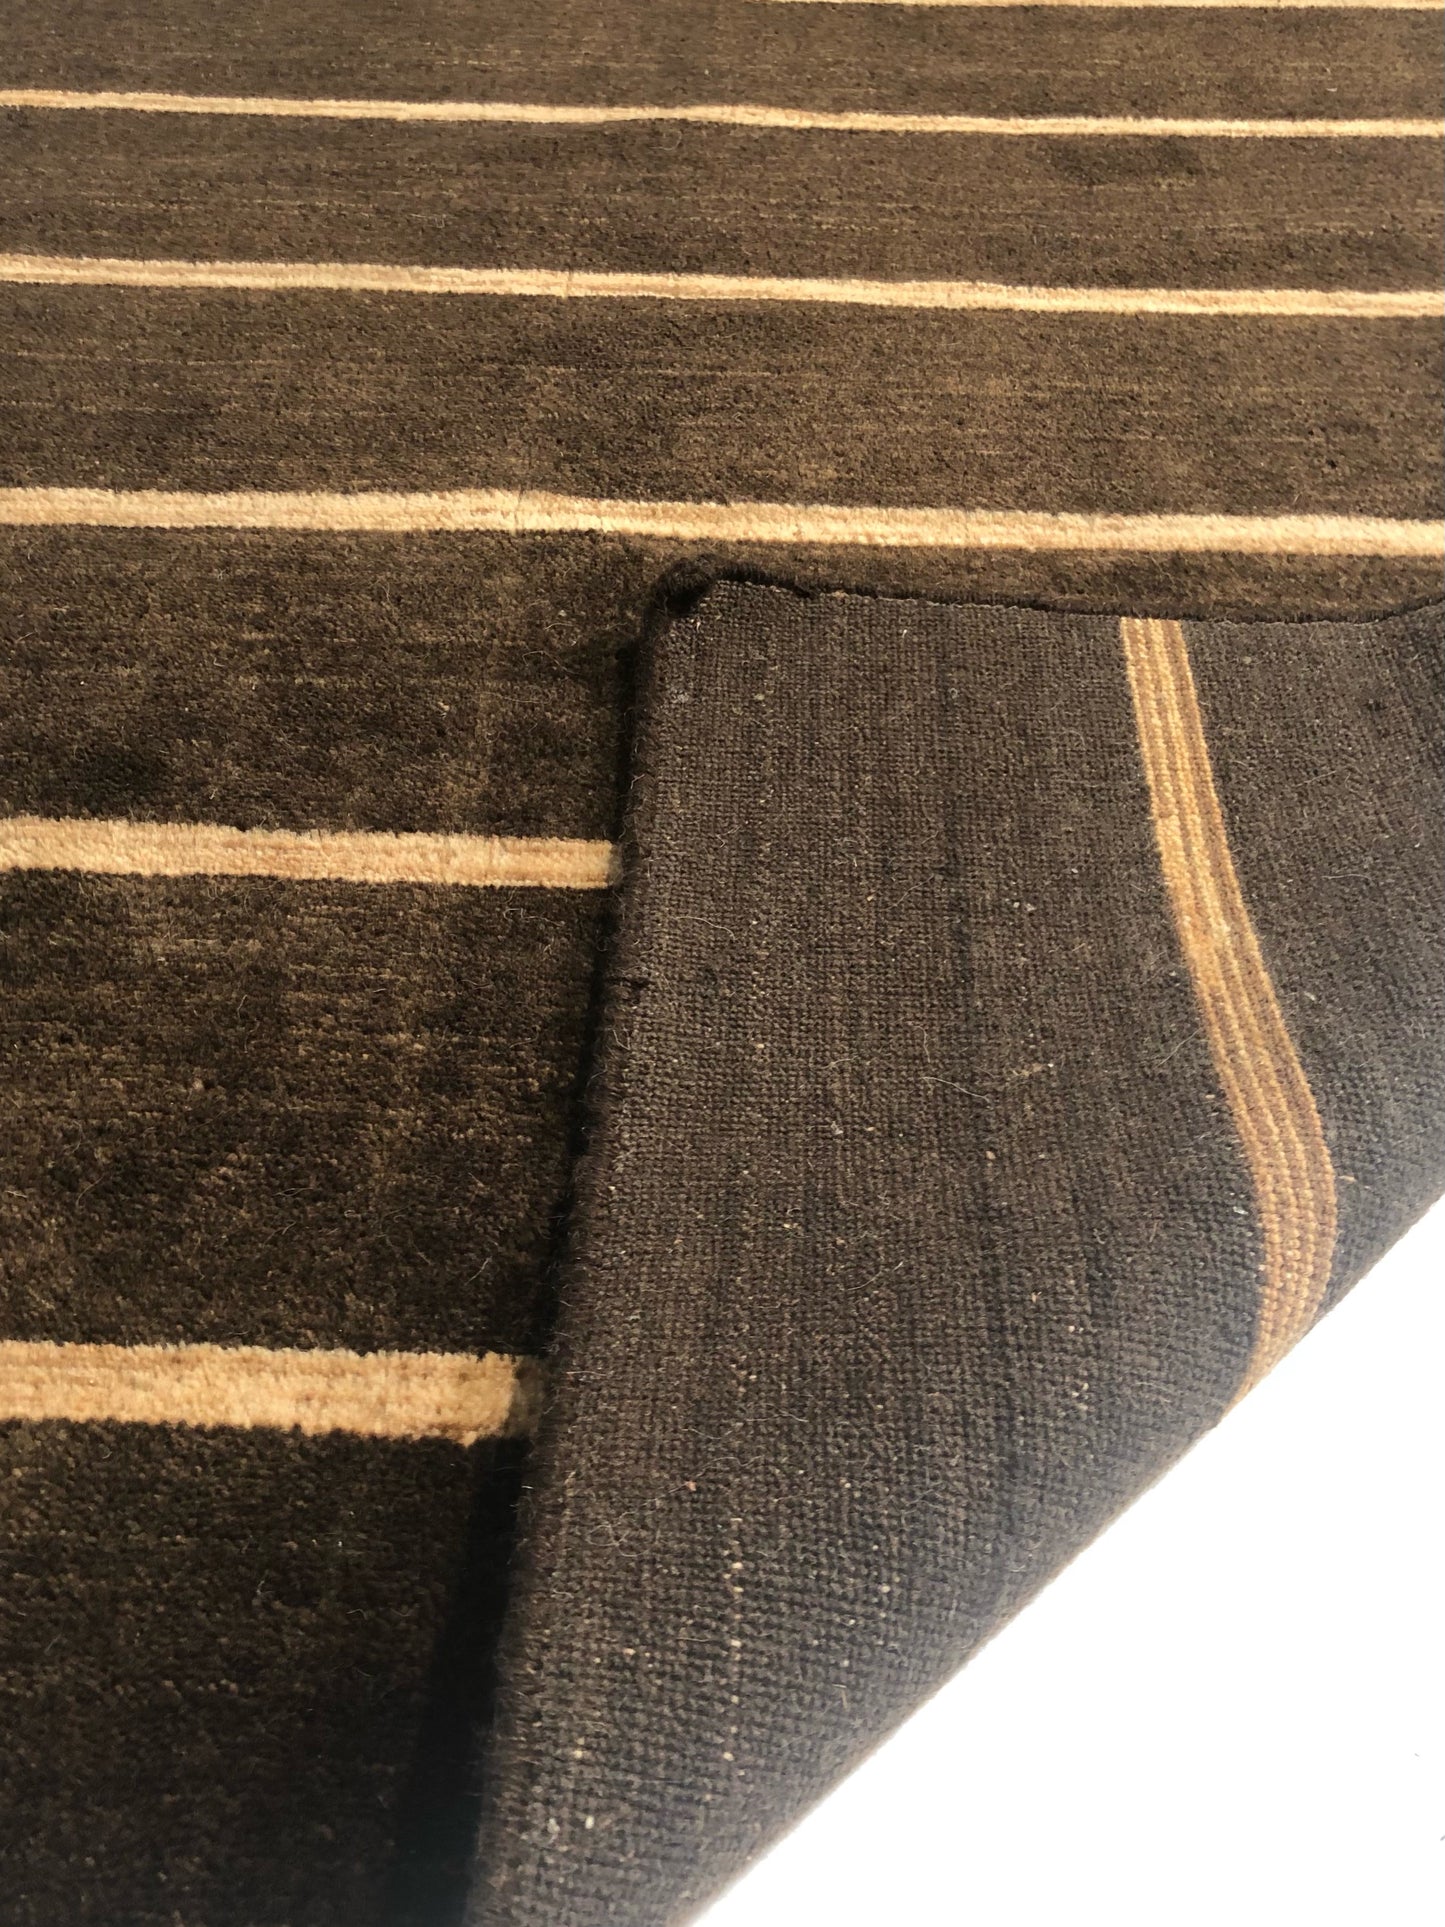 fold_carpet